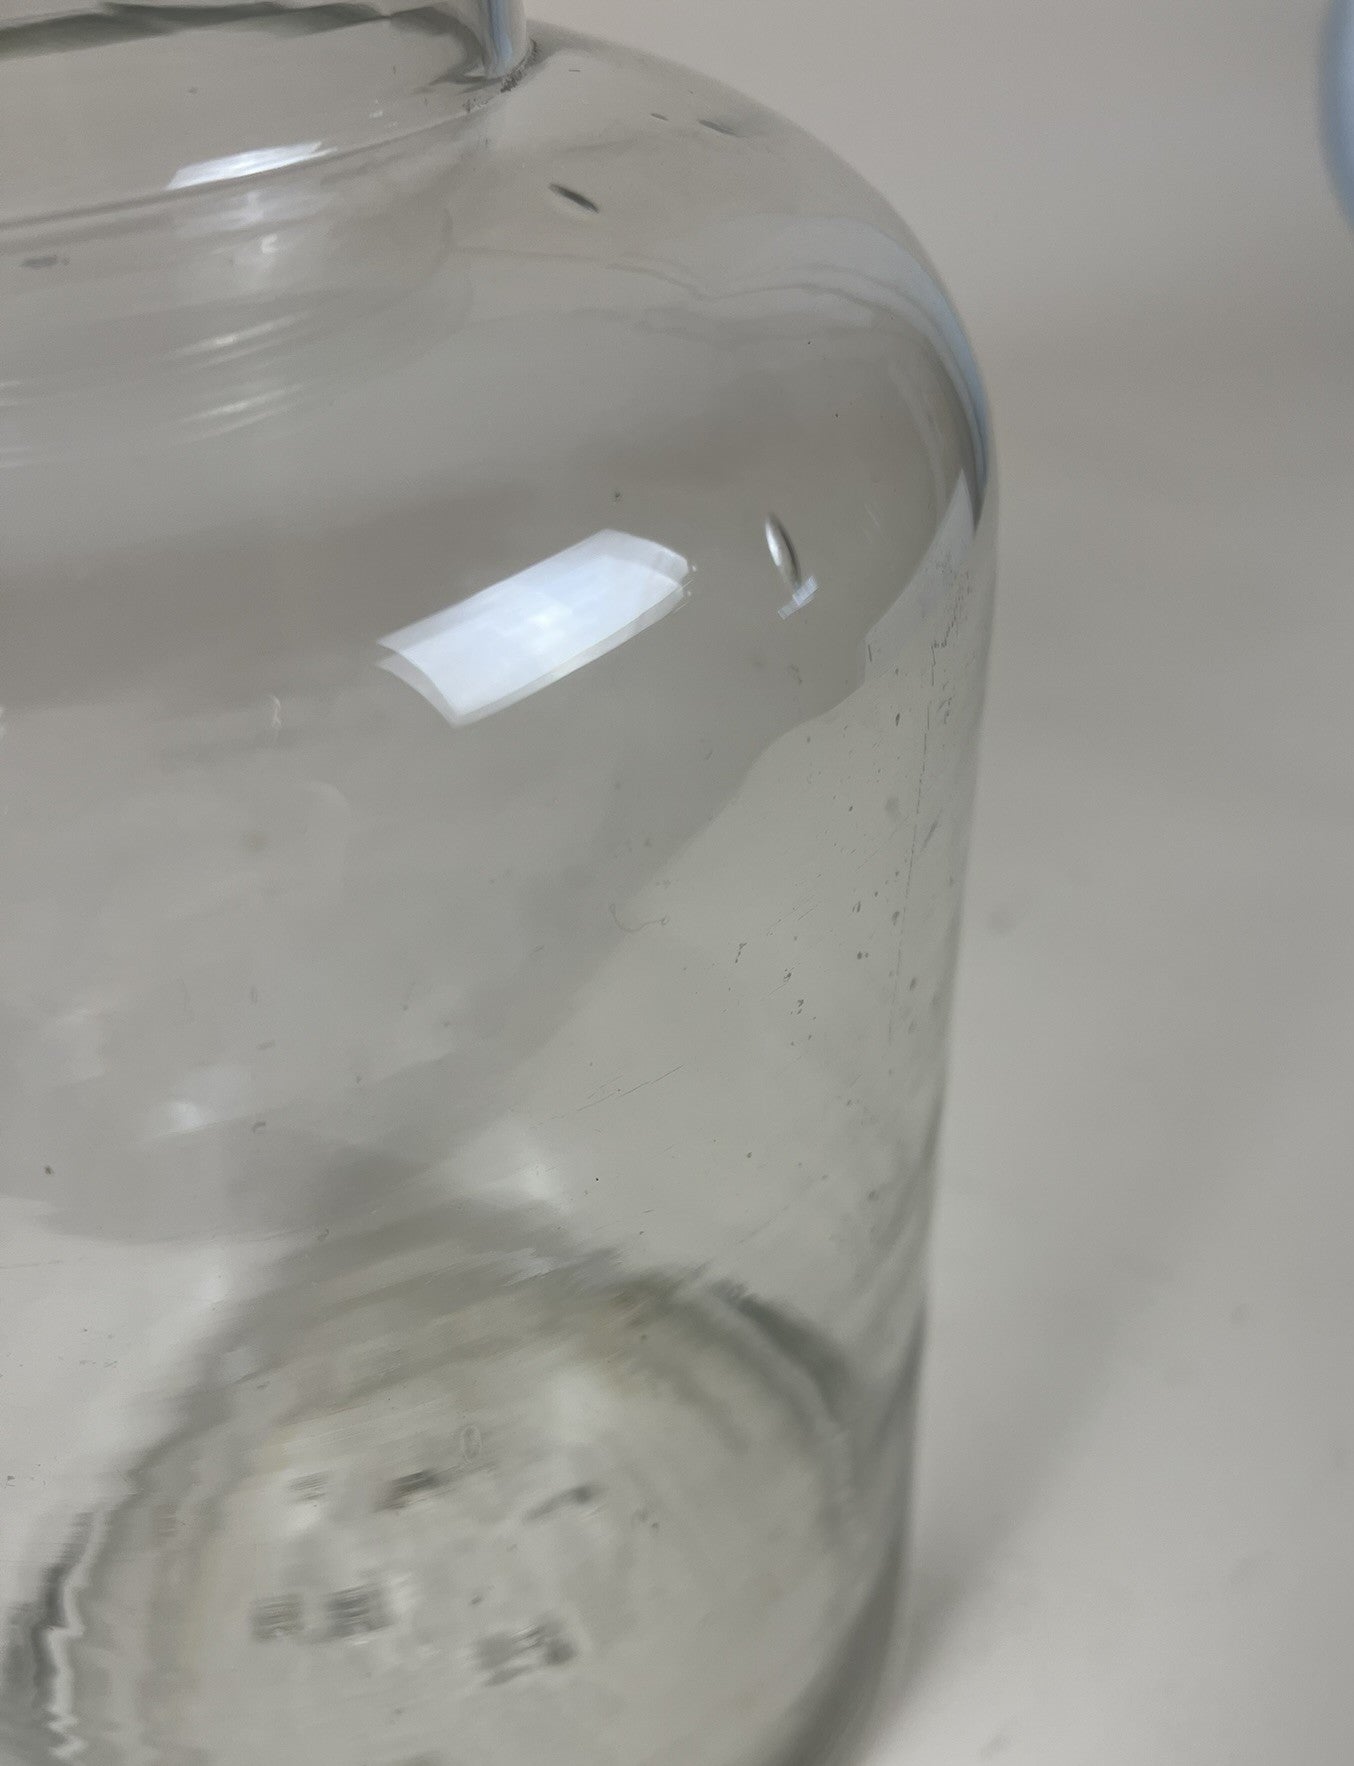 Hungarian Blown Glass Pickle Jar - 8 Litter